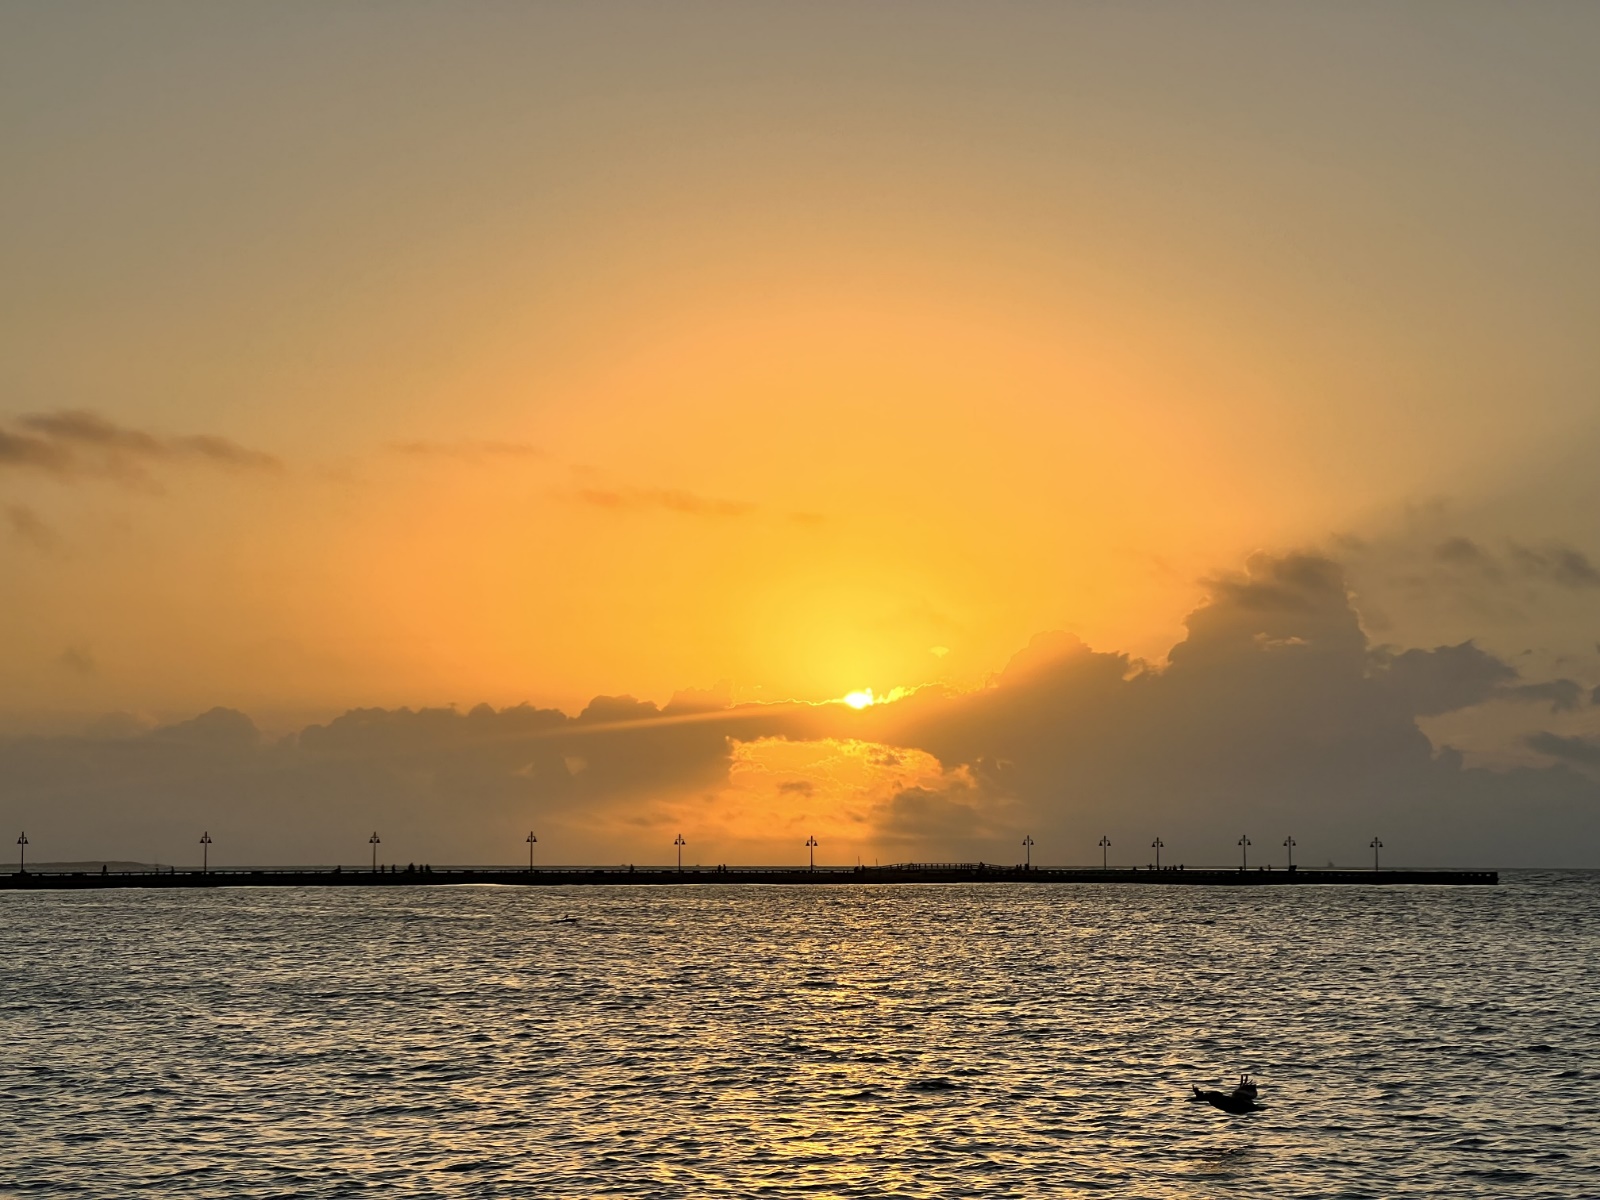 Key West Sunrise